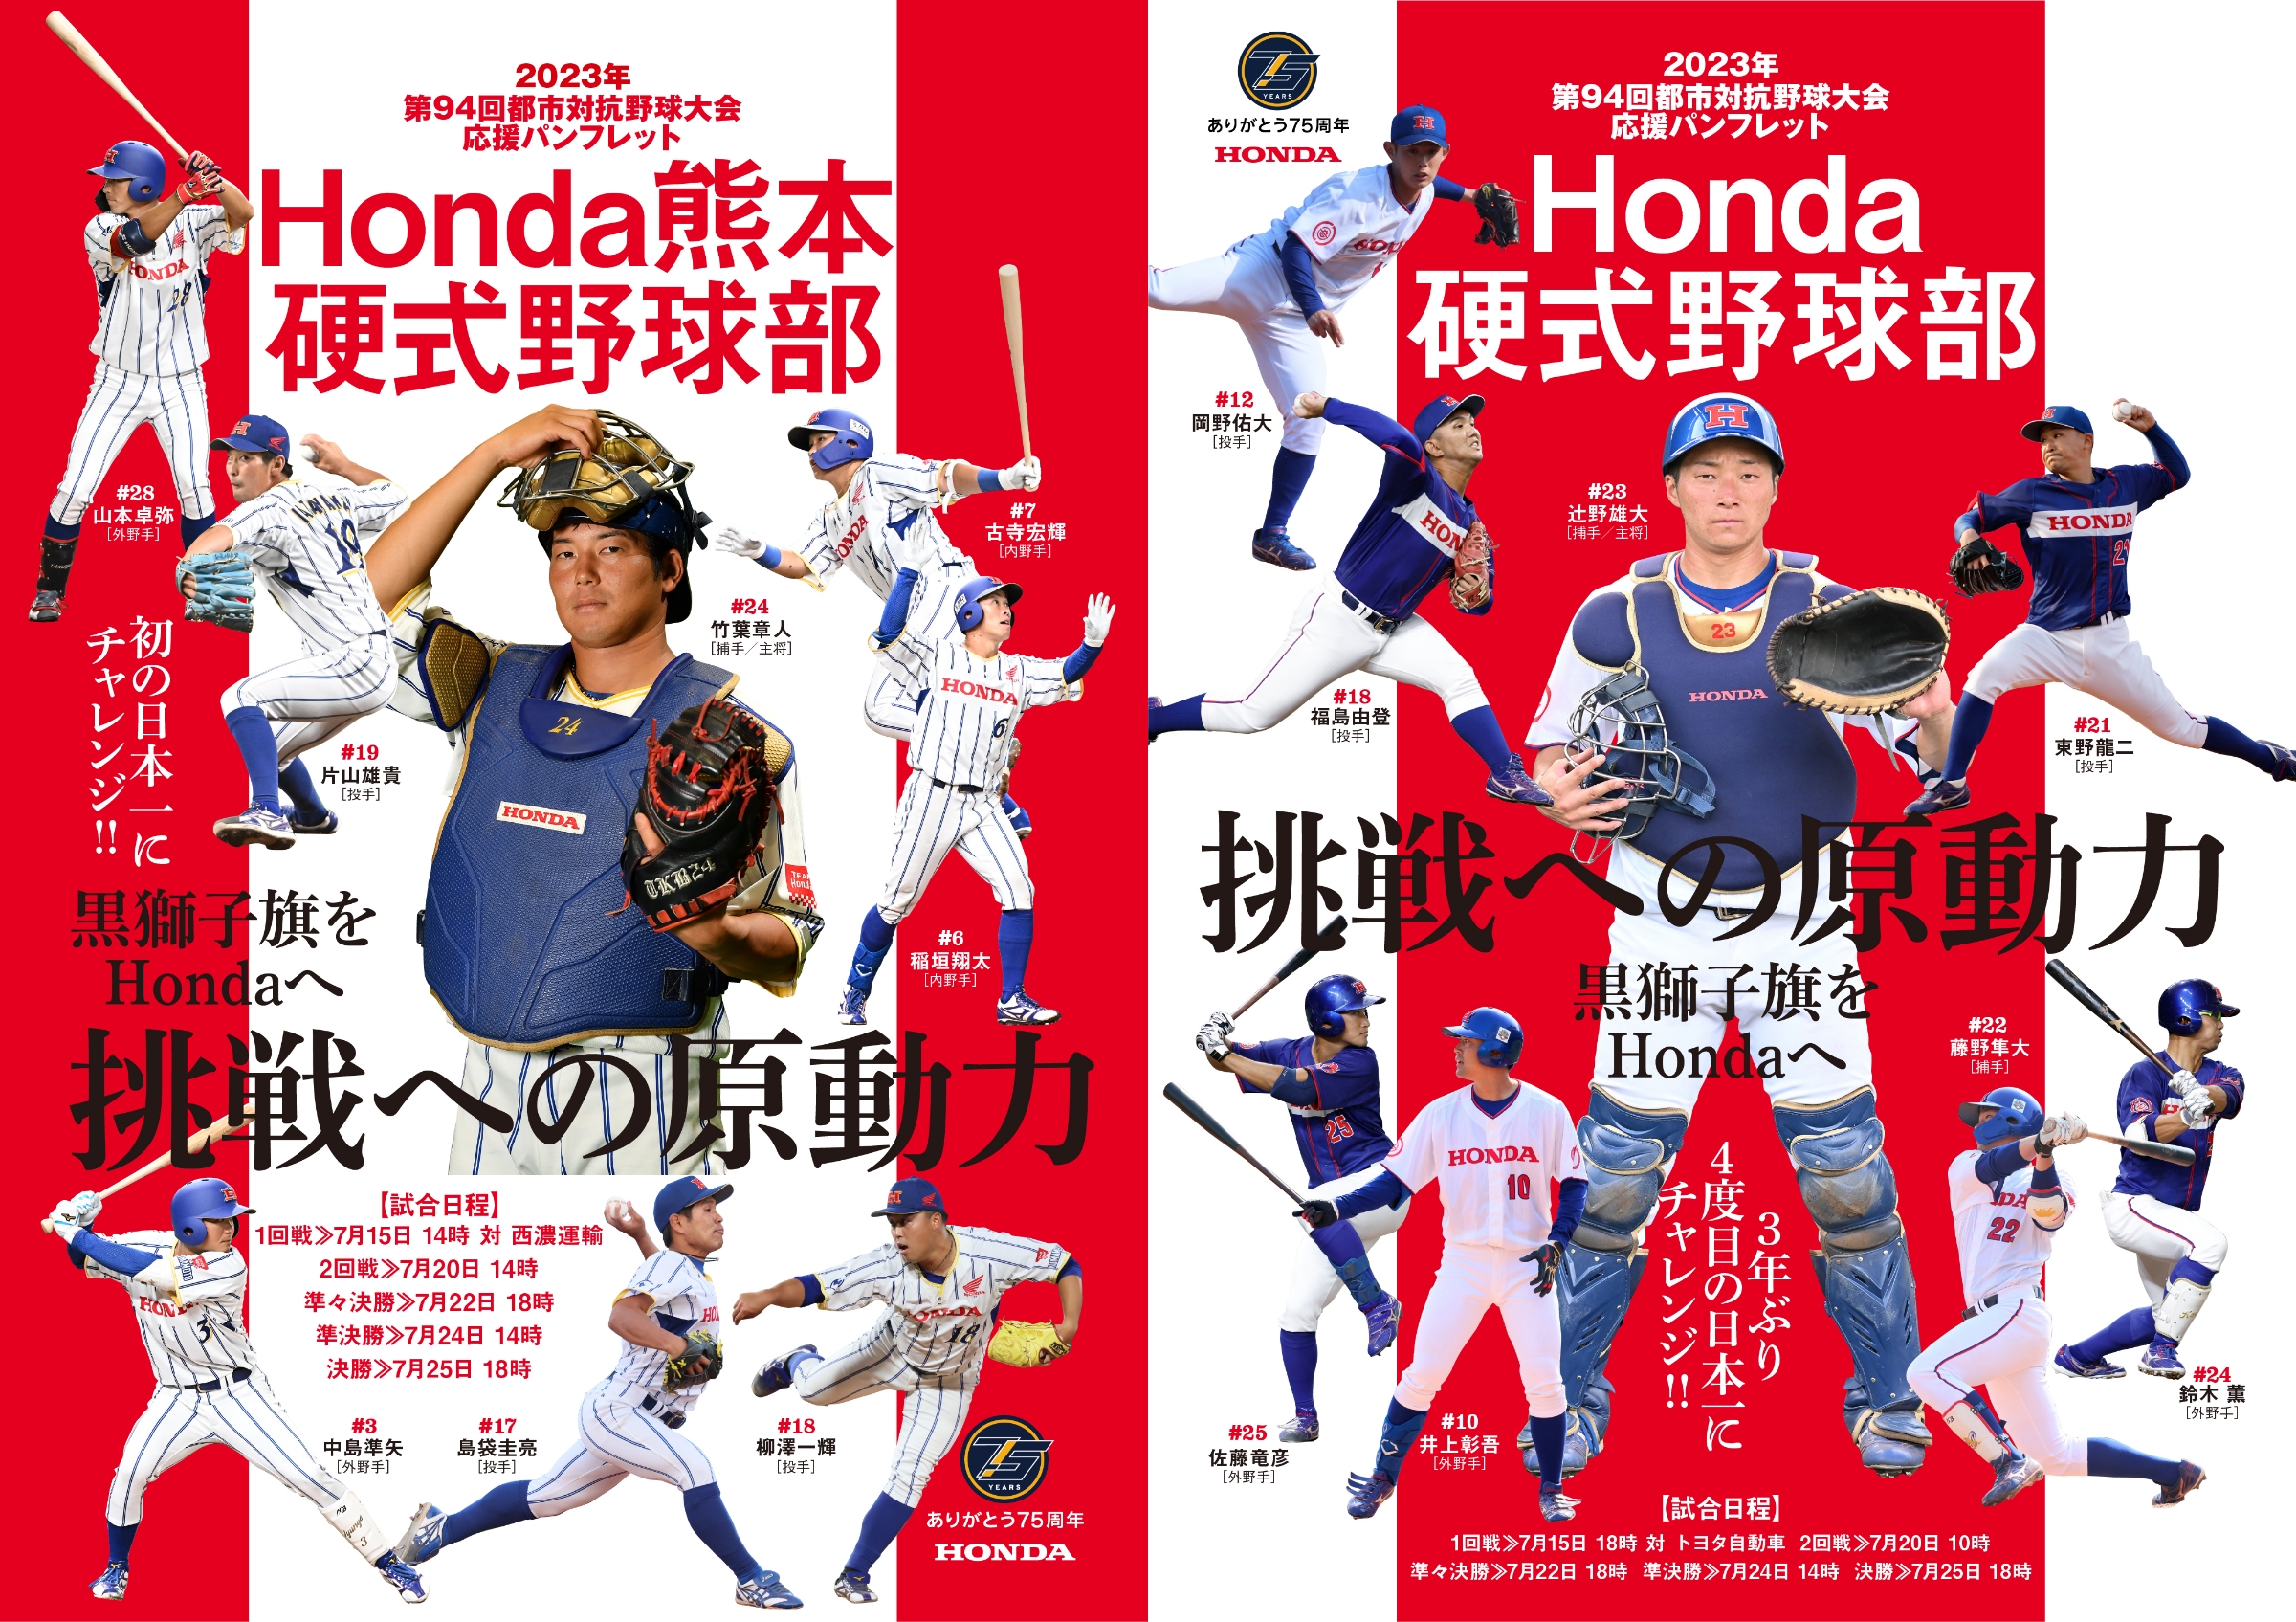 第94回都市対抗野球大会に出場するHonda硬式野球部、Honda熊本硬式野球部の応援パンフレットを公開